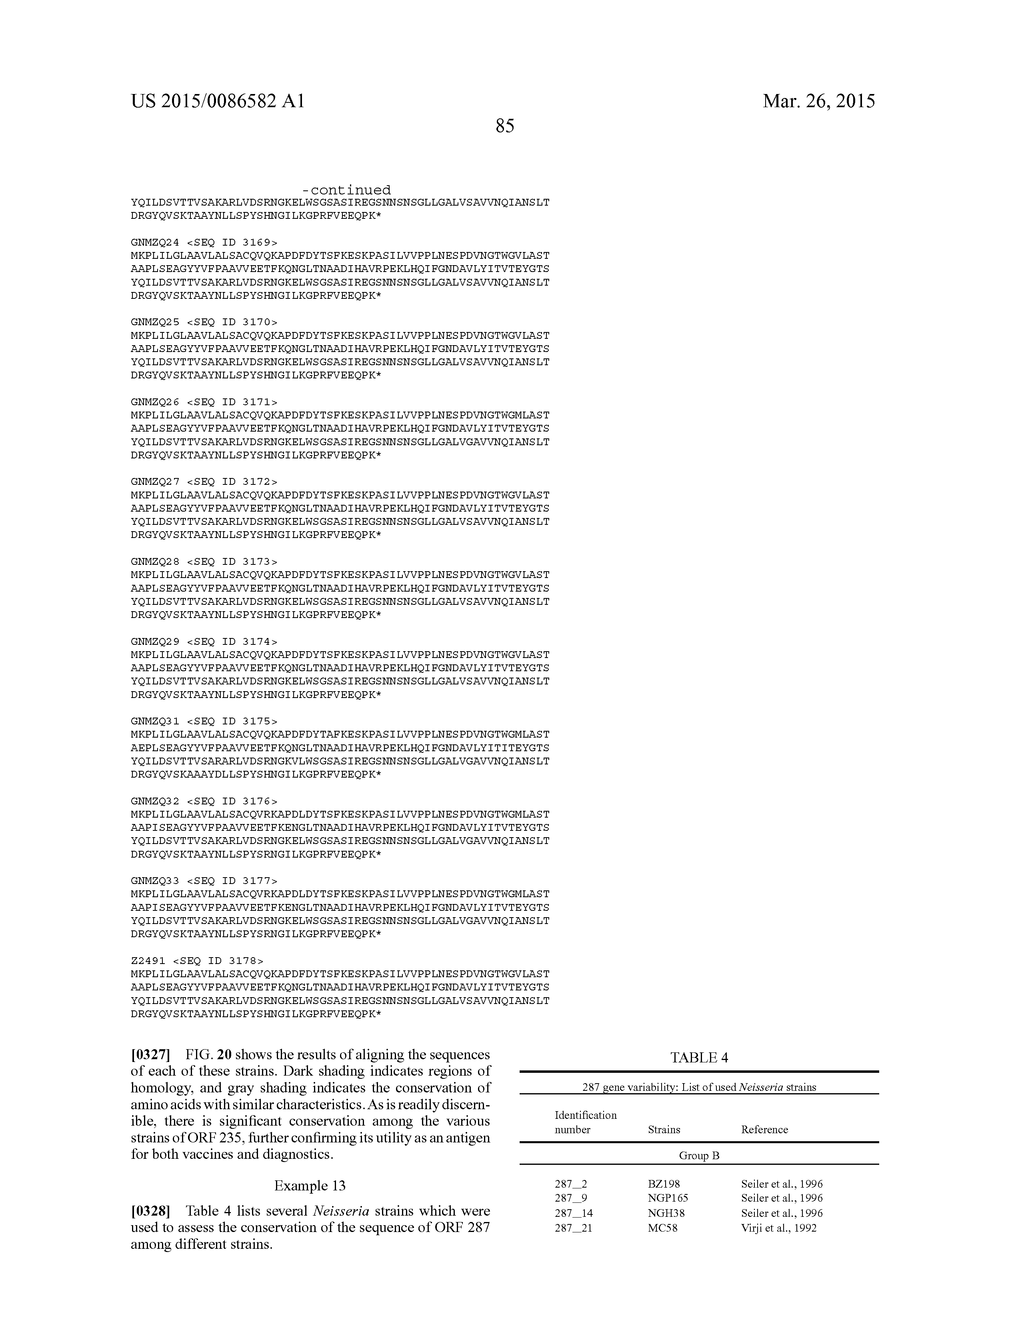 NEISSERIA MENINGITIDIS ANTIGENS AND COMPOSITIONS - diagram, schematic, and image 117